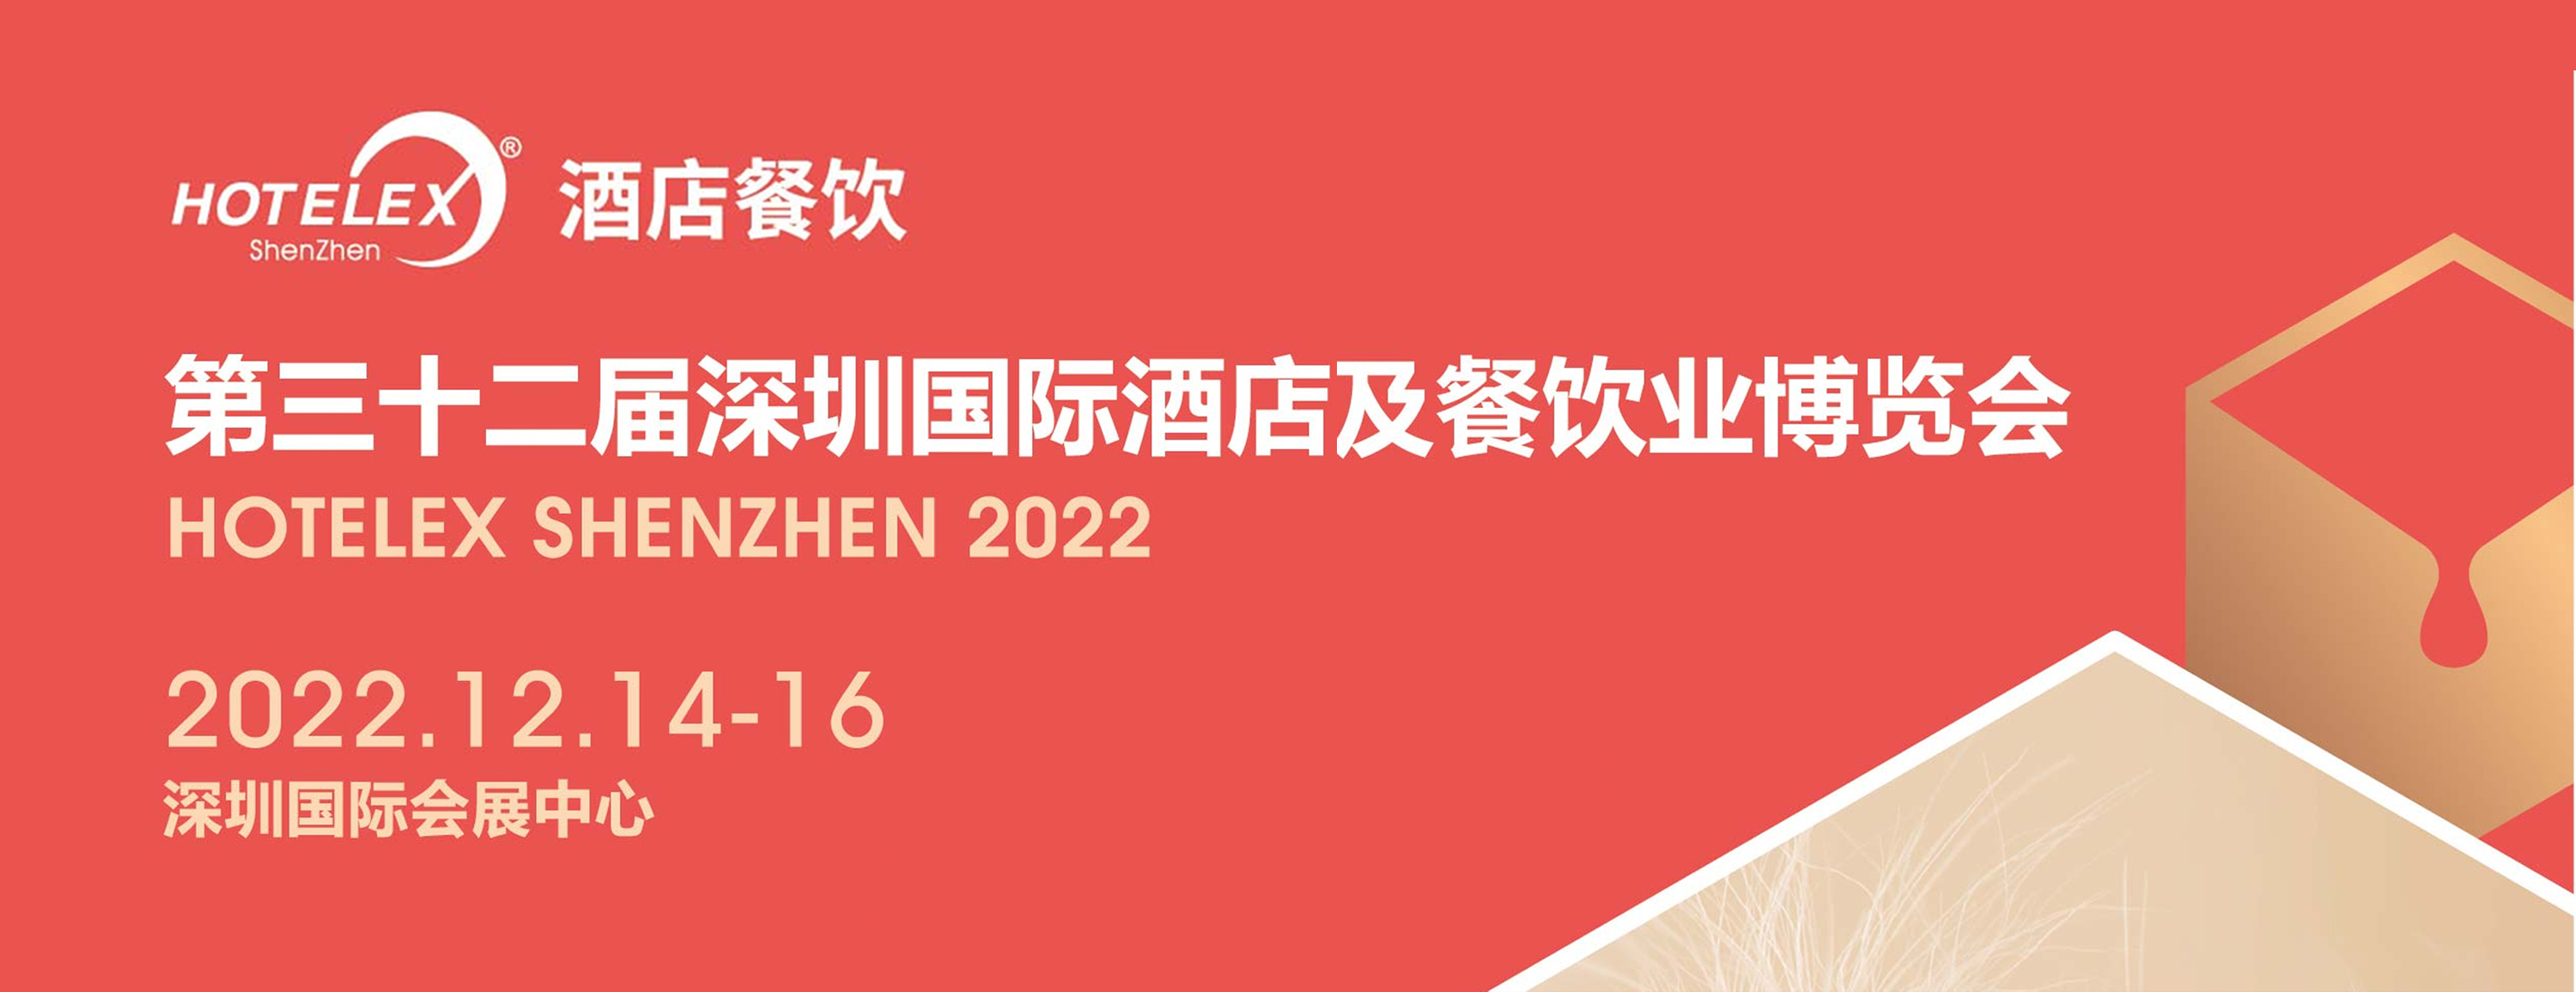 2022年12月14-16日第三十二届深圳国际酒店及餐饮业博览会